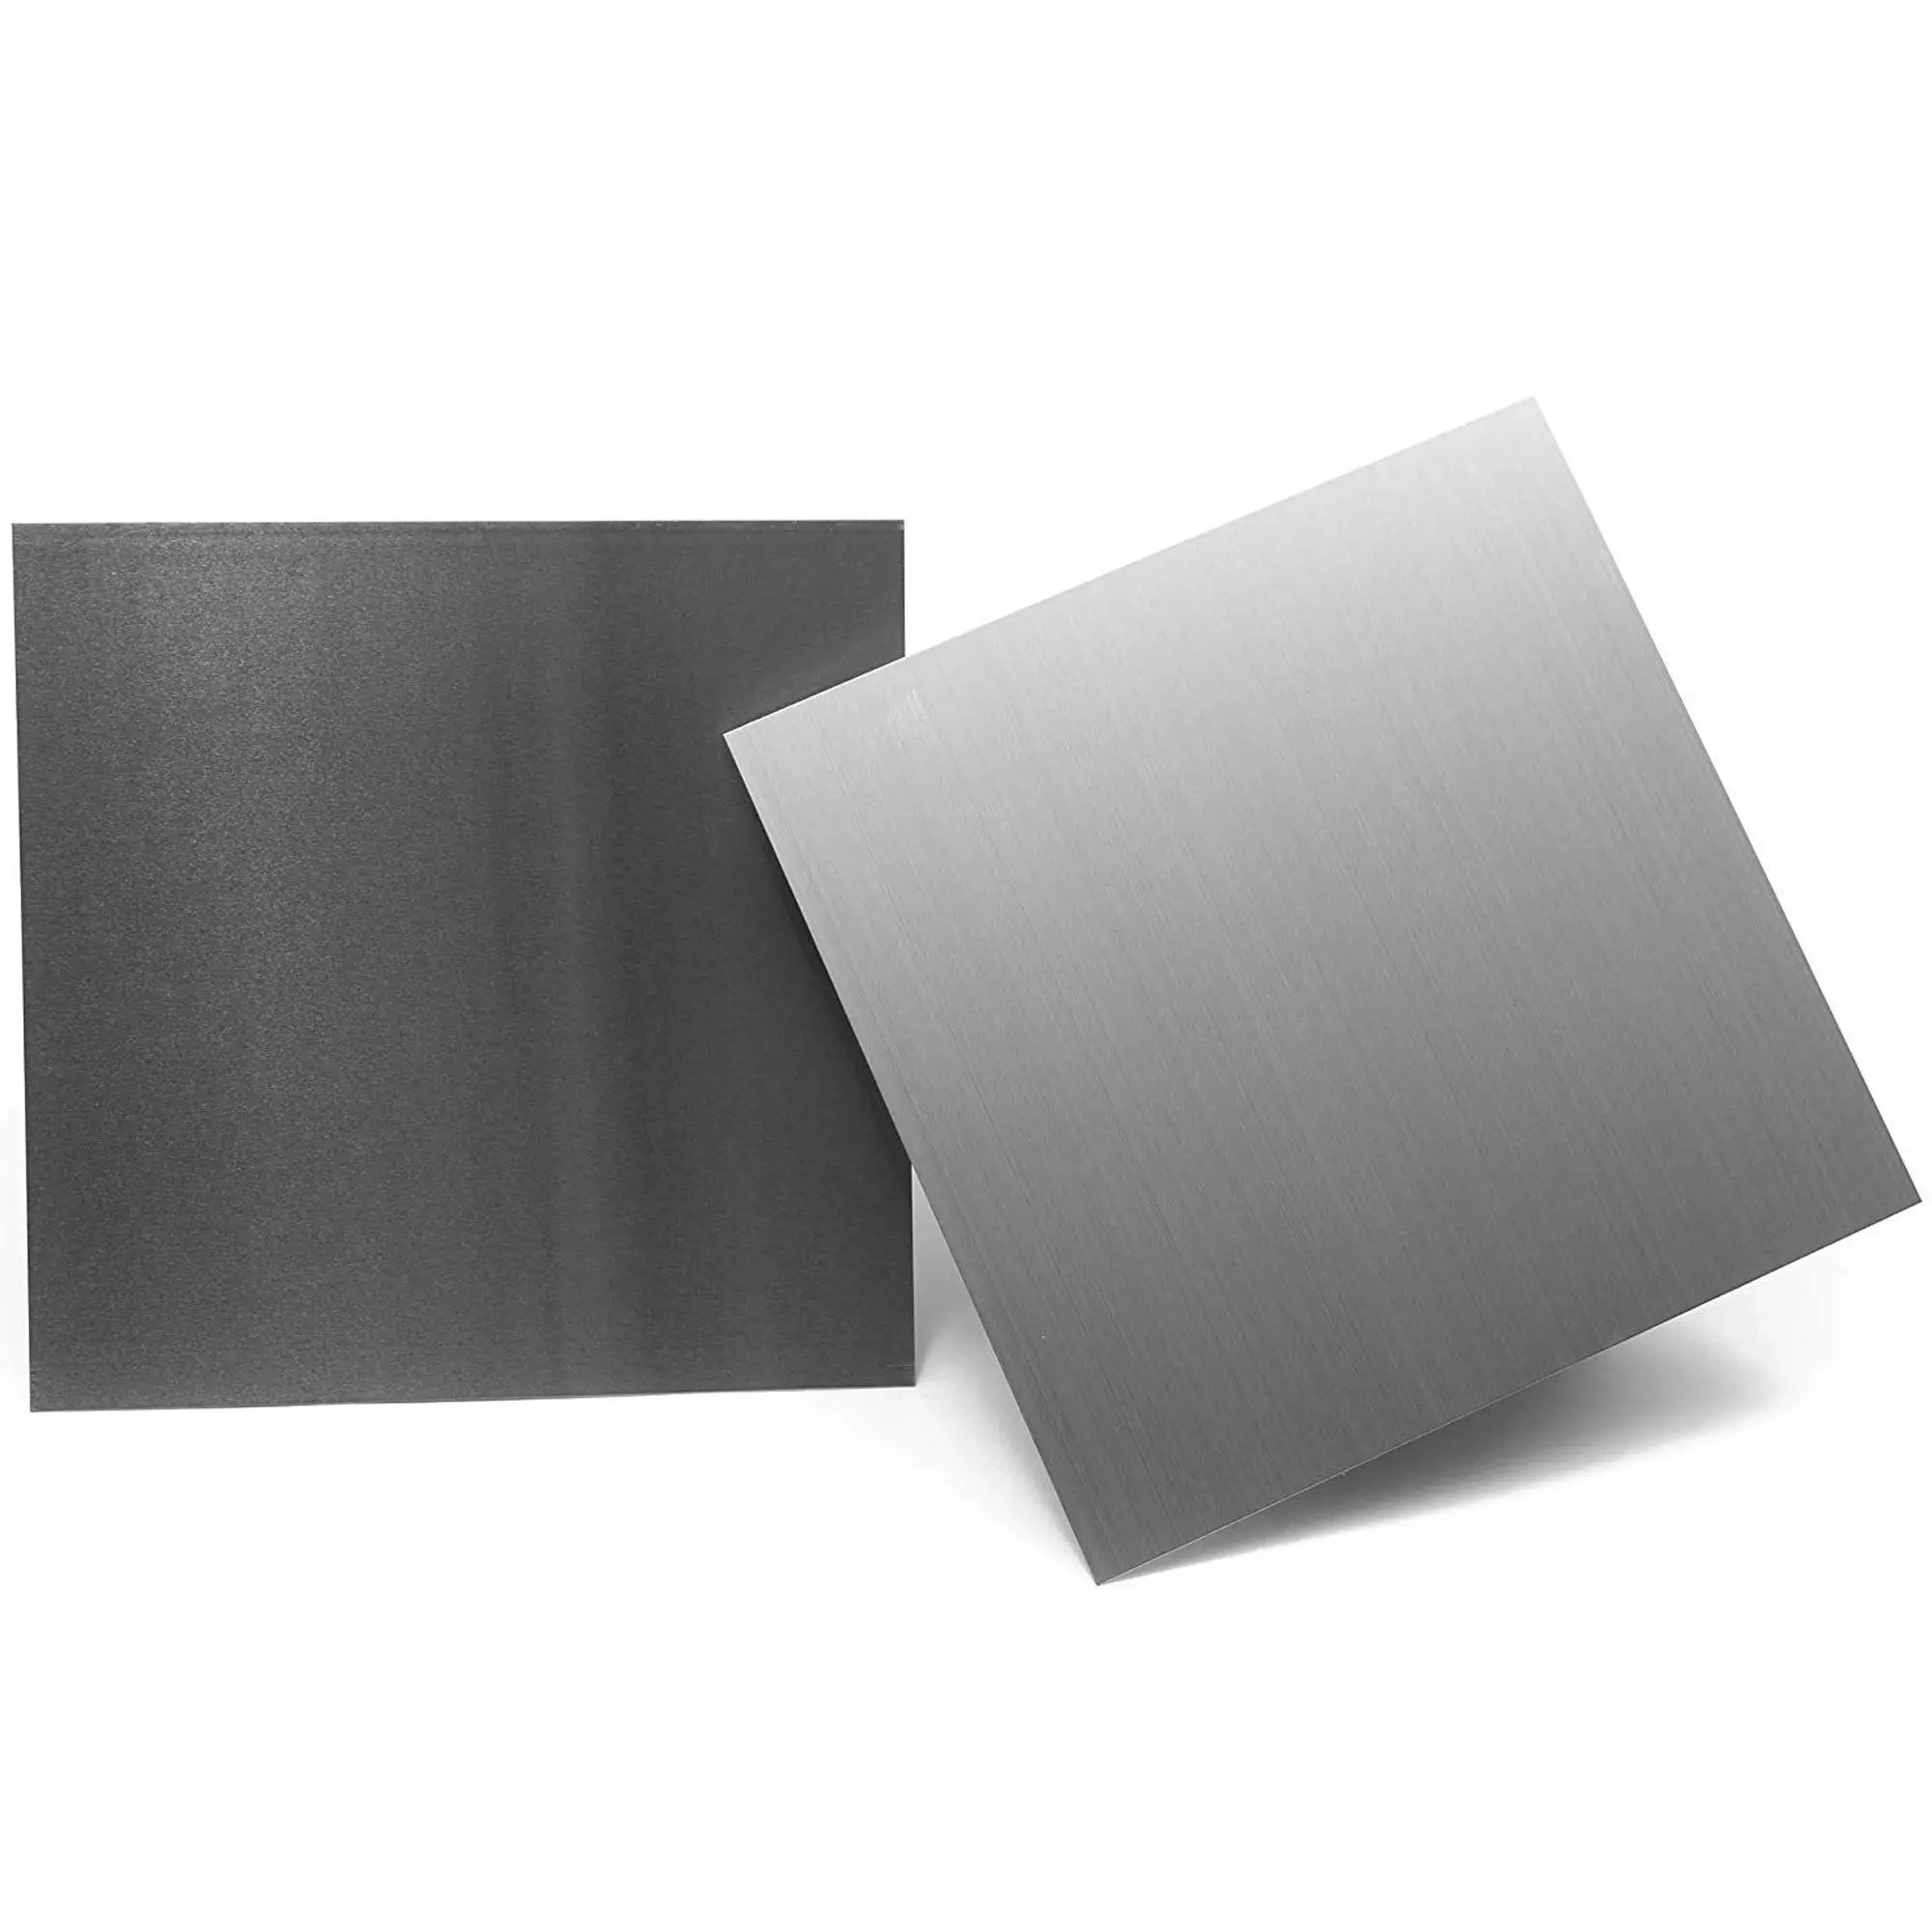 Алюминиевый лист 1 мм. Пластина алюминиевая 1 мм. Алюминий лист 3mm 1.250x2.500. Лист алюминиевый 10мм.